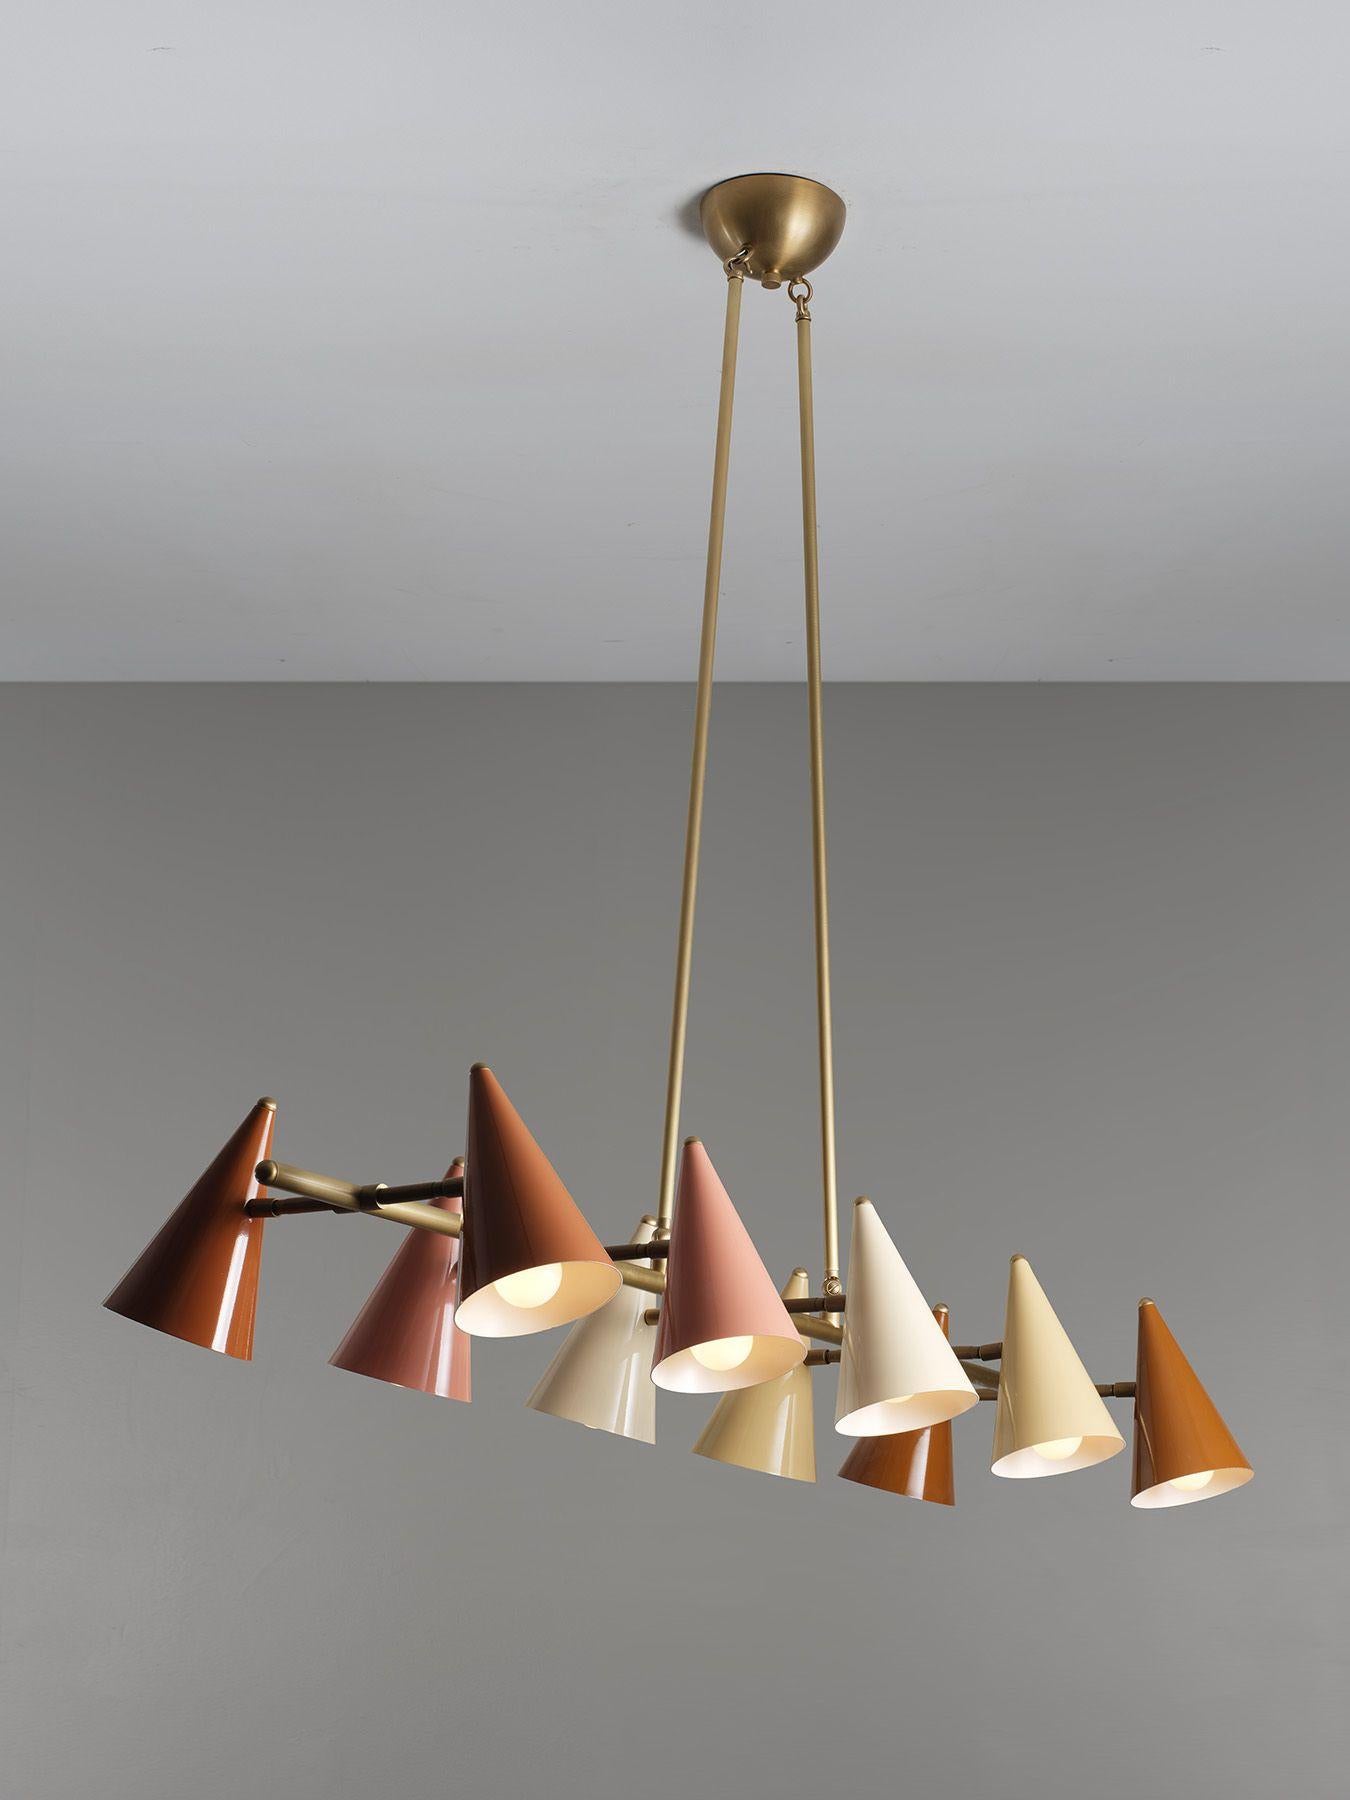 Le plafonnier Flotilla, conçu par Design/One-Light, est une sculpture fonctionnelle ludique inspirée du tissu 